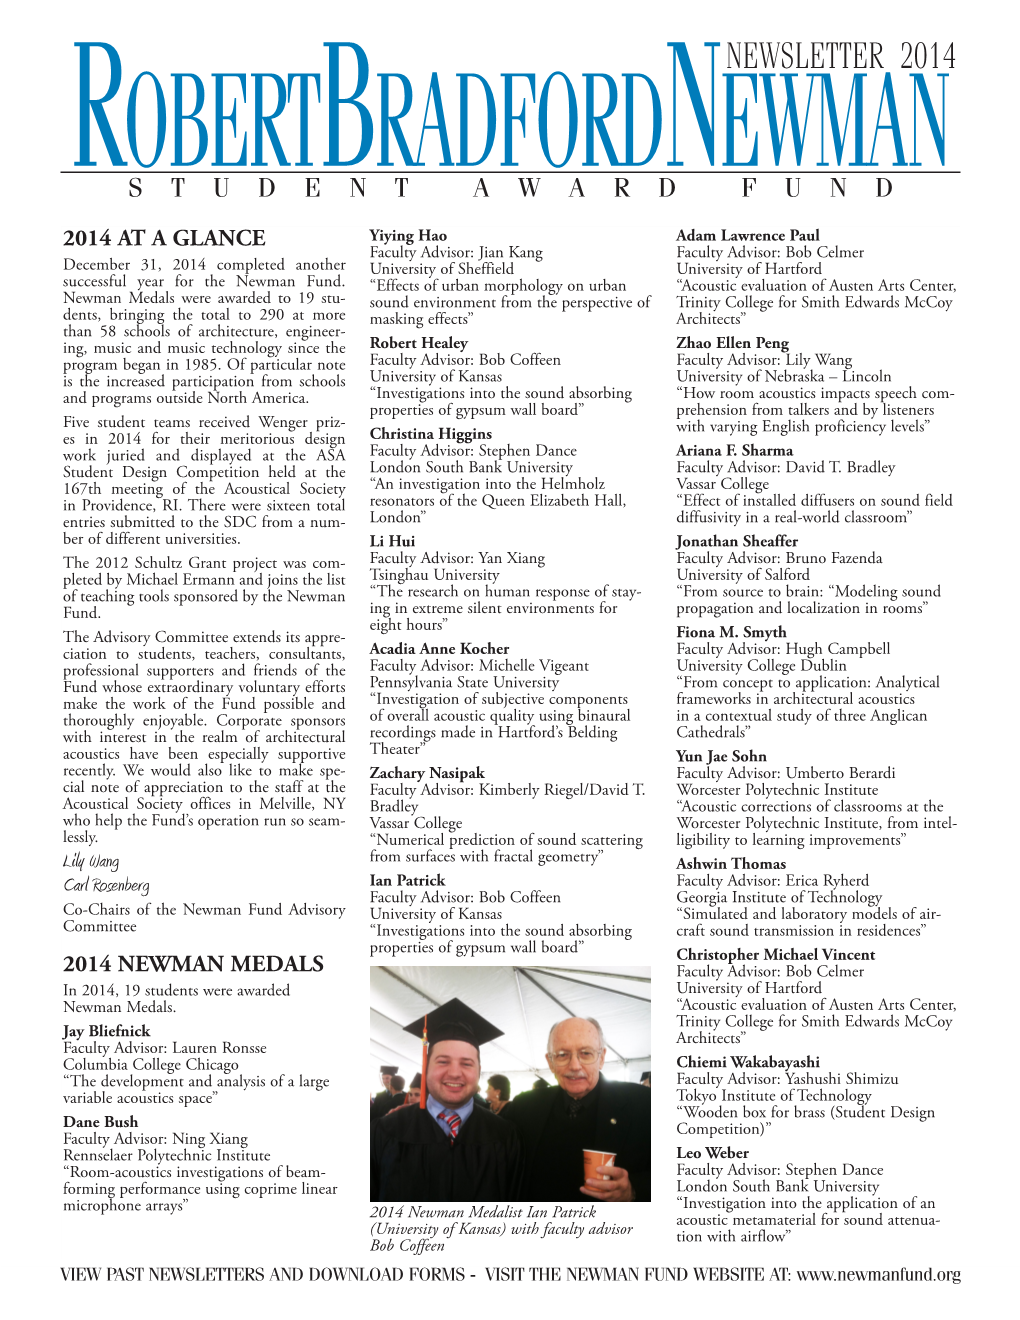 2014 Newsletter for the Robert Bradford Newman Student Award